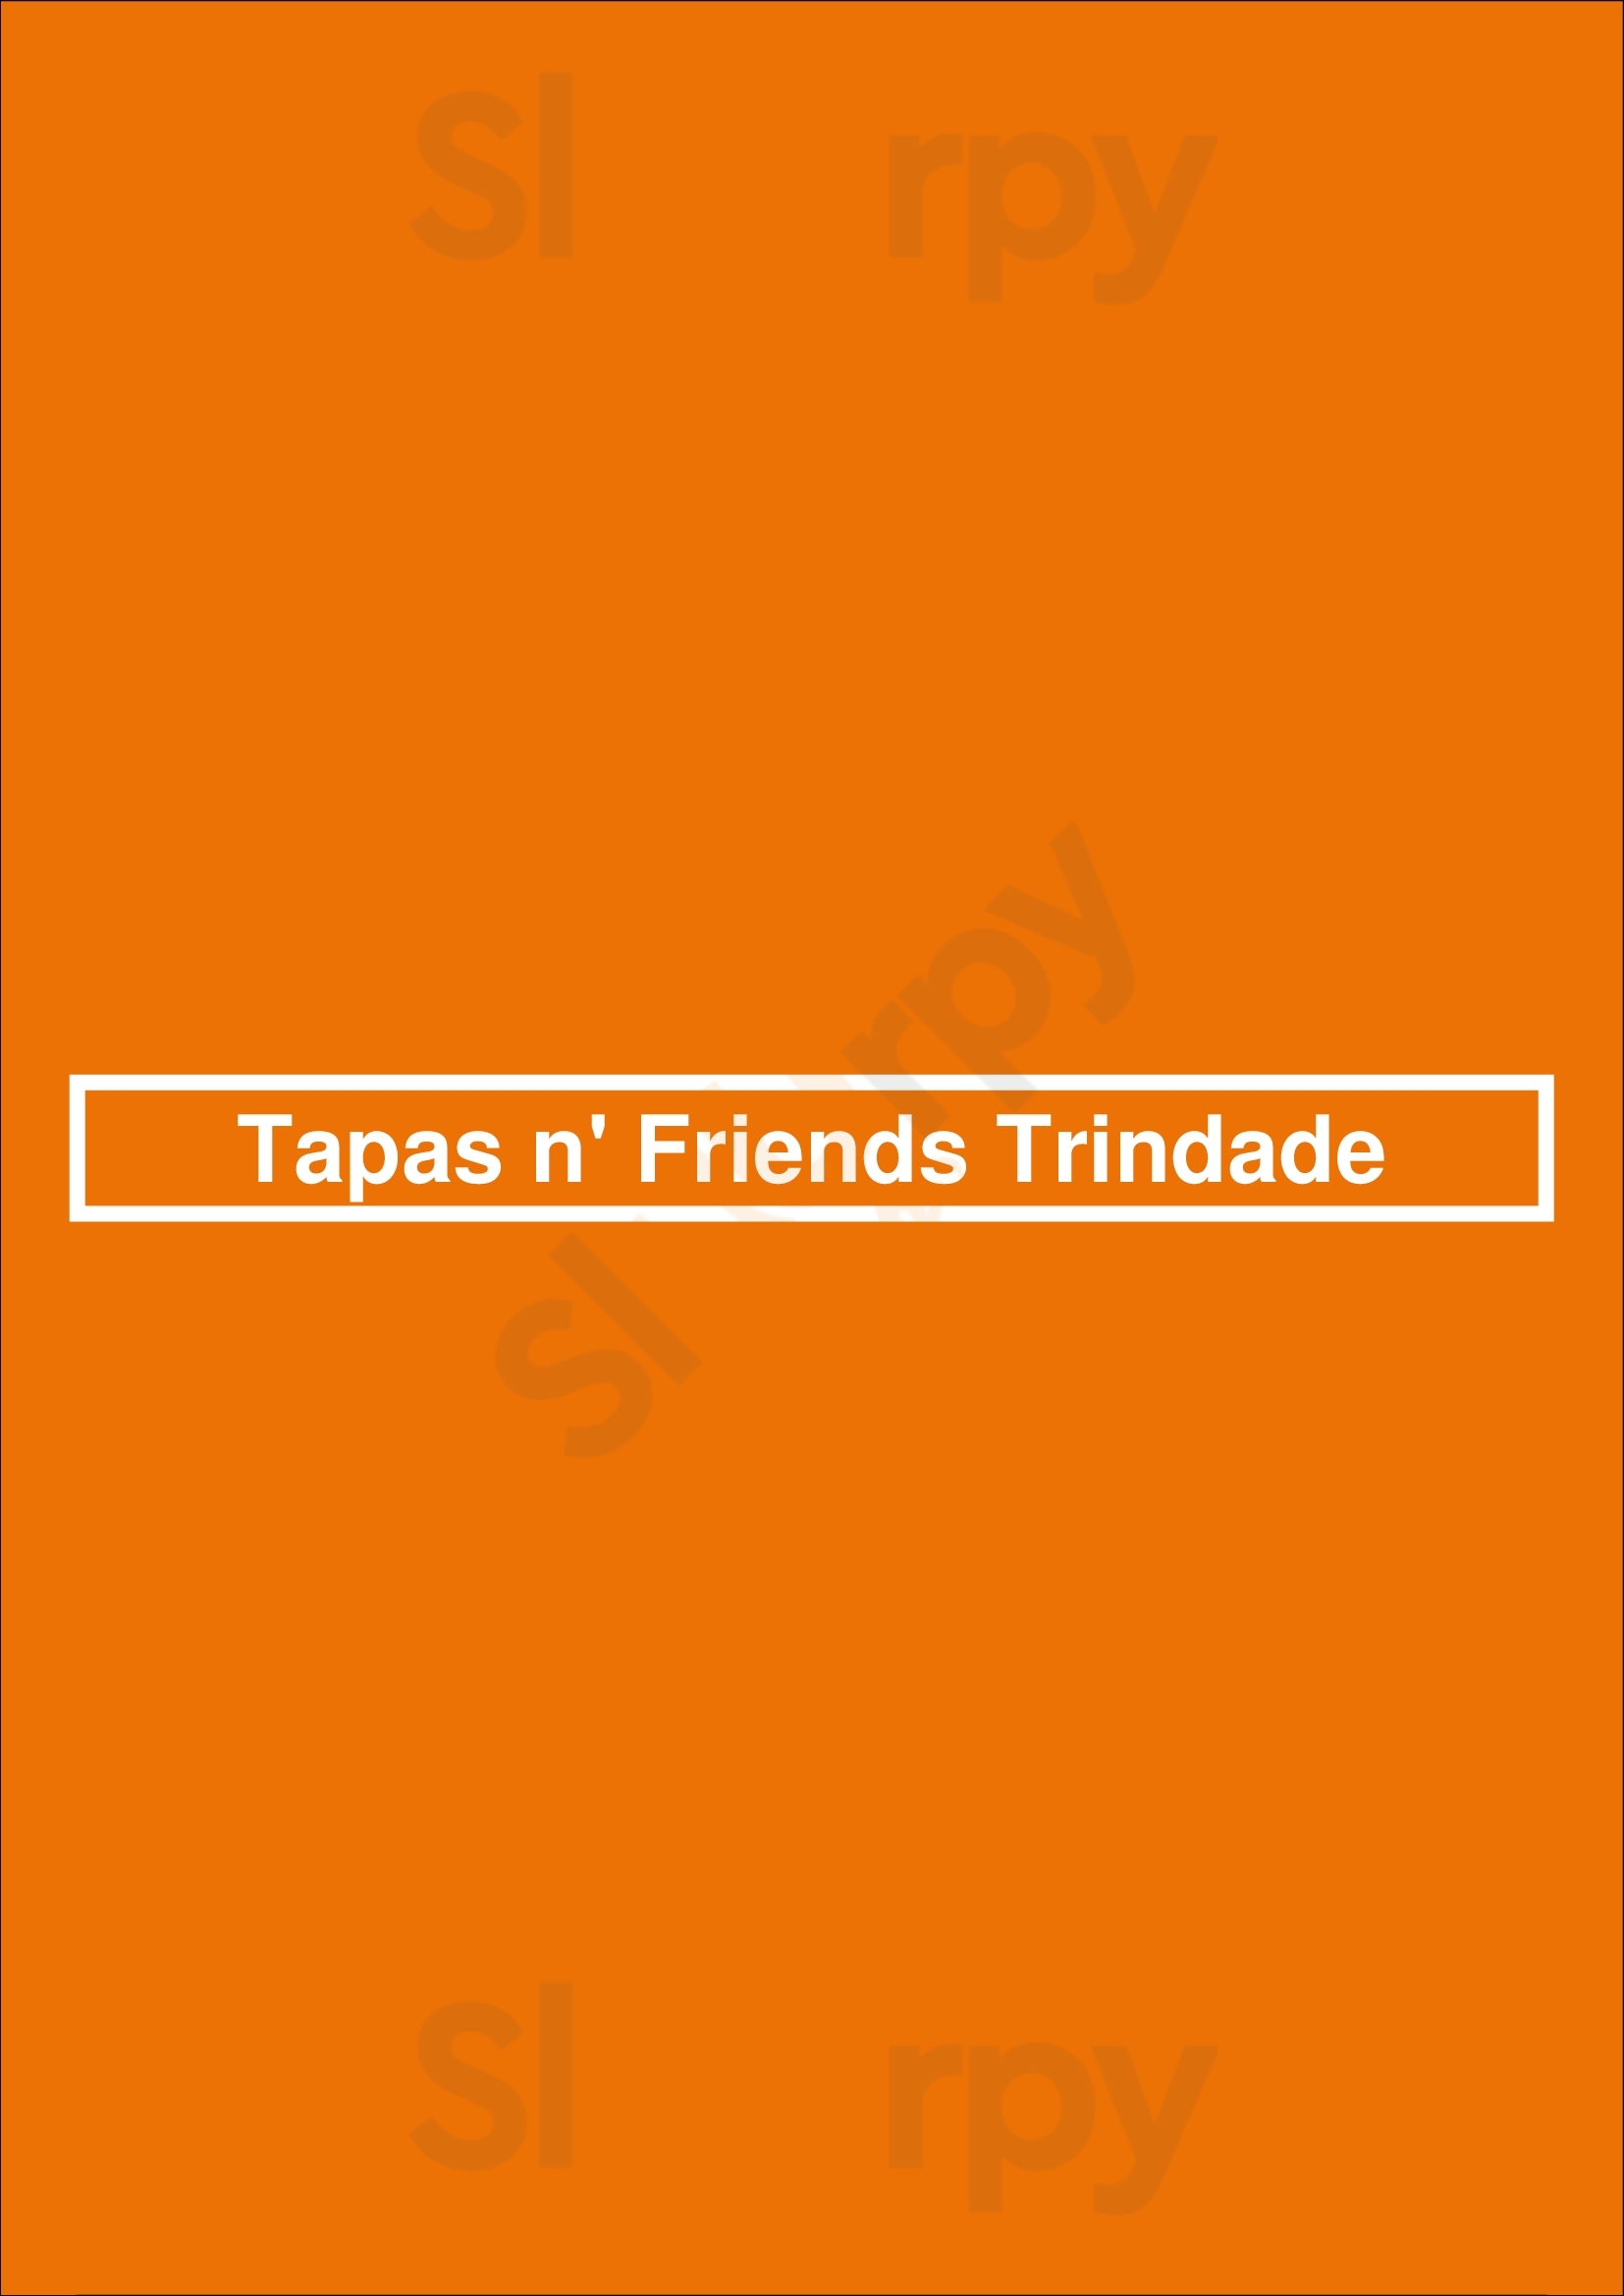 Tapas N' Friends Trindade Lisboa Menu - 1